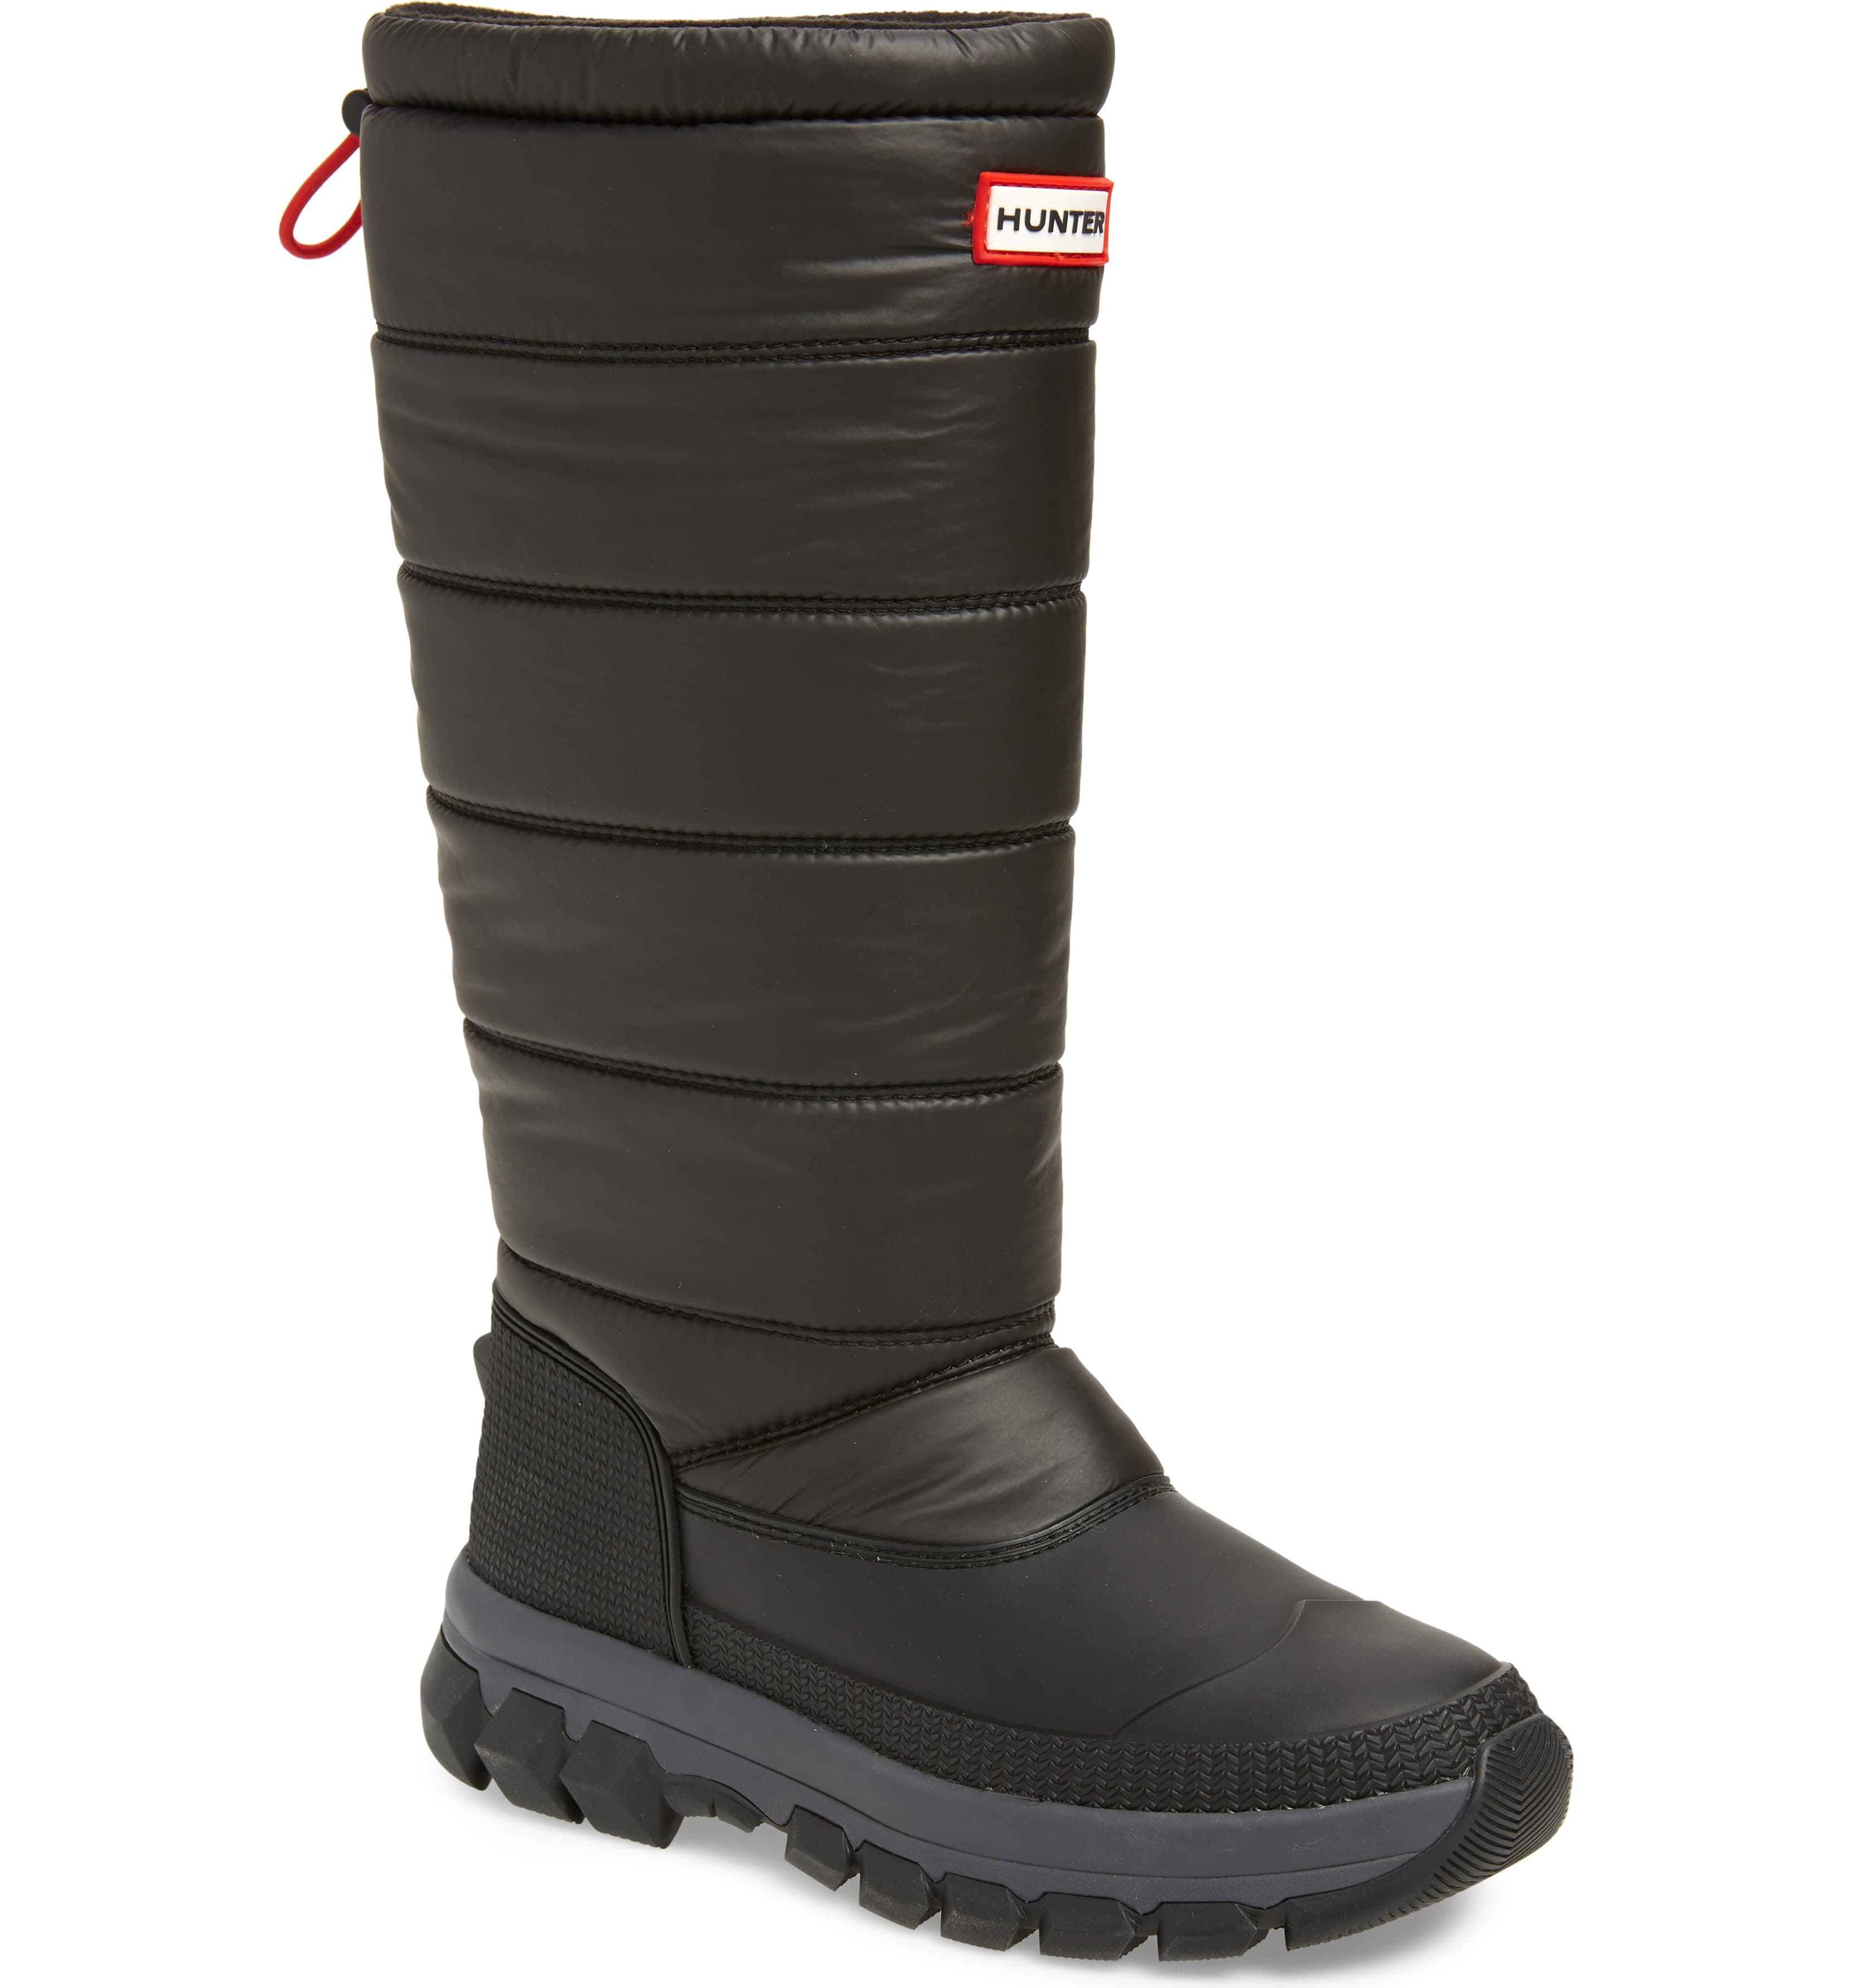 Best Weatherproof Snow Boots,